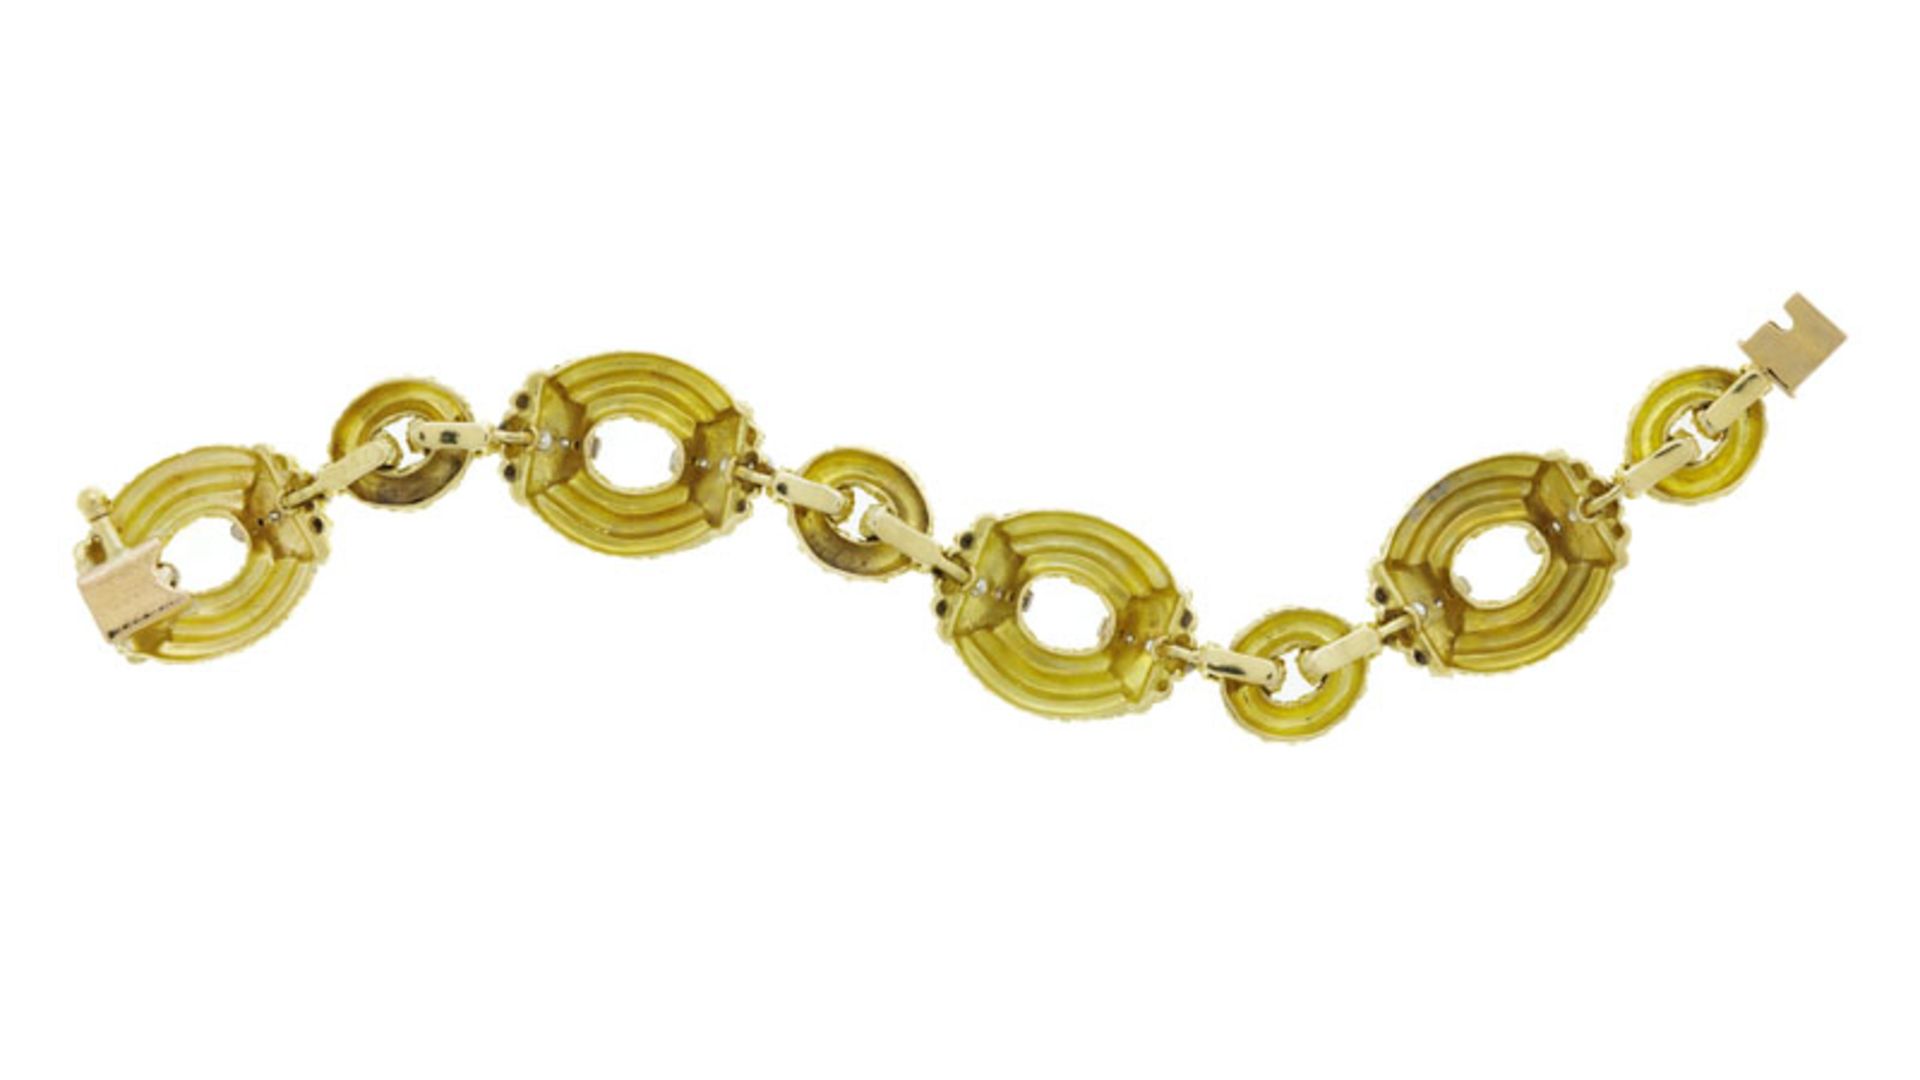 Van Cleef & Arpels, bracelet années 1970 2 ors 750 à maillons texturés serti de diamants - Image 3 of 4